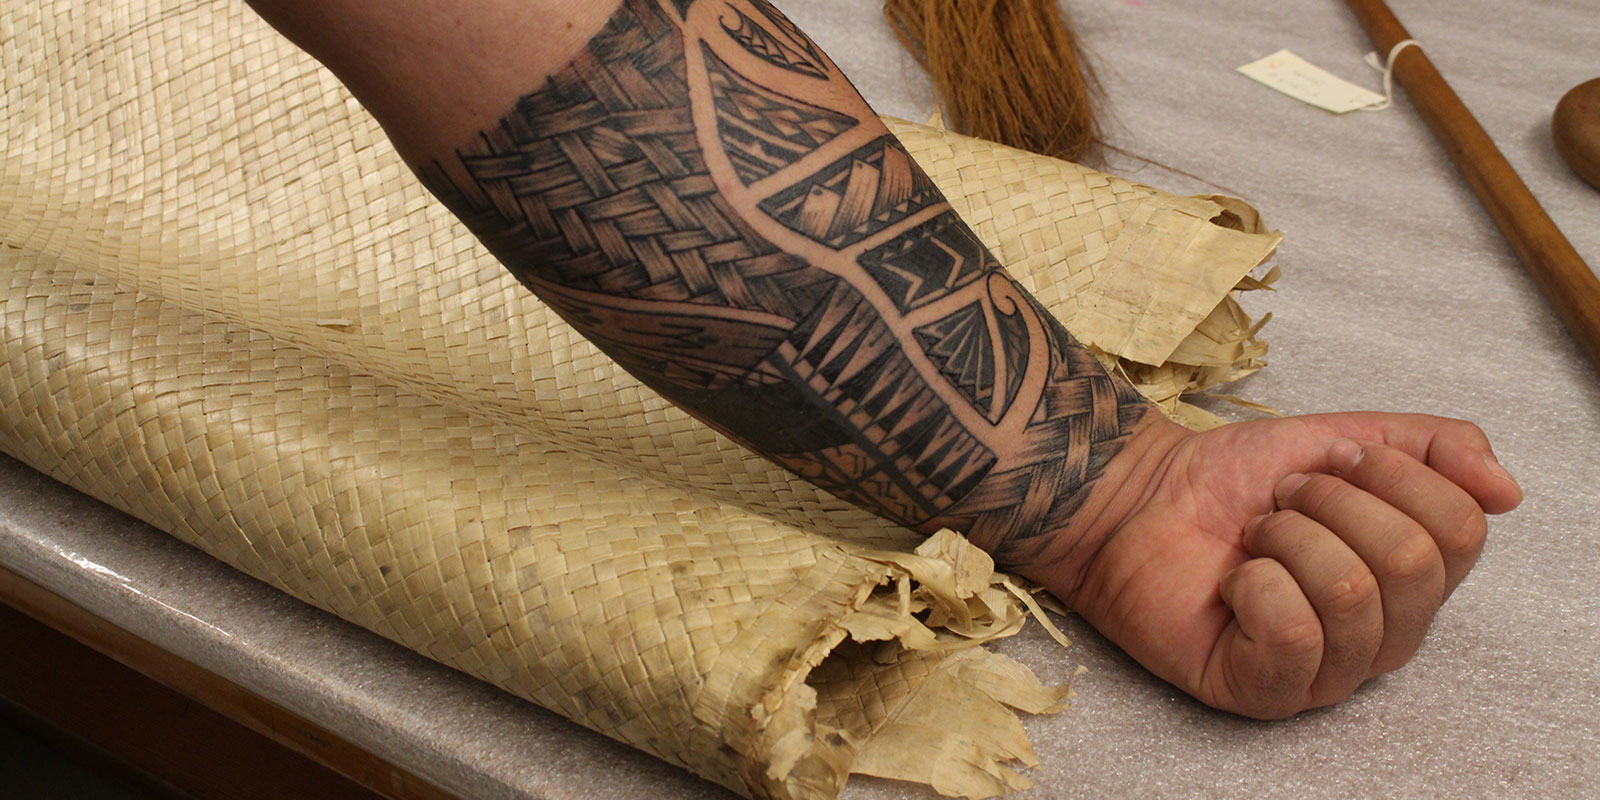 Close up of Fuavai's tattooed forearm